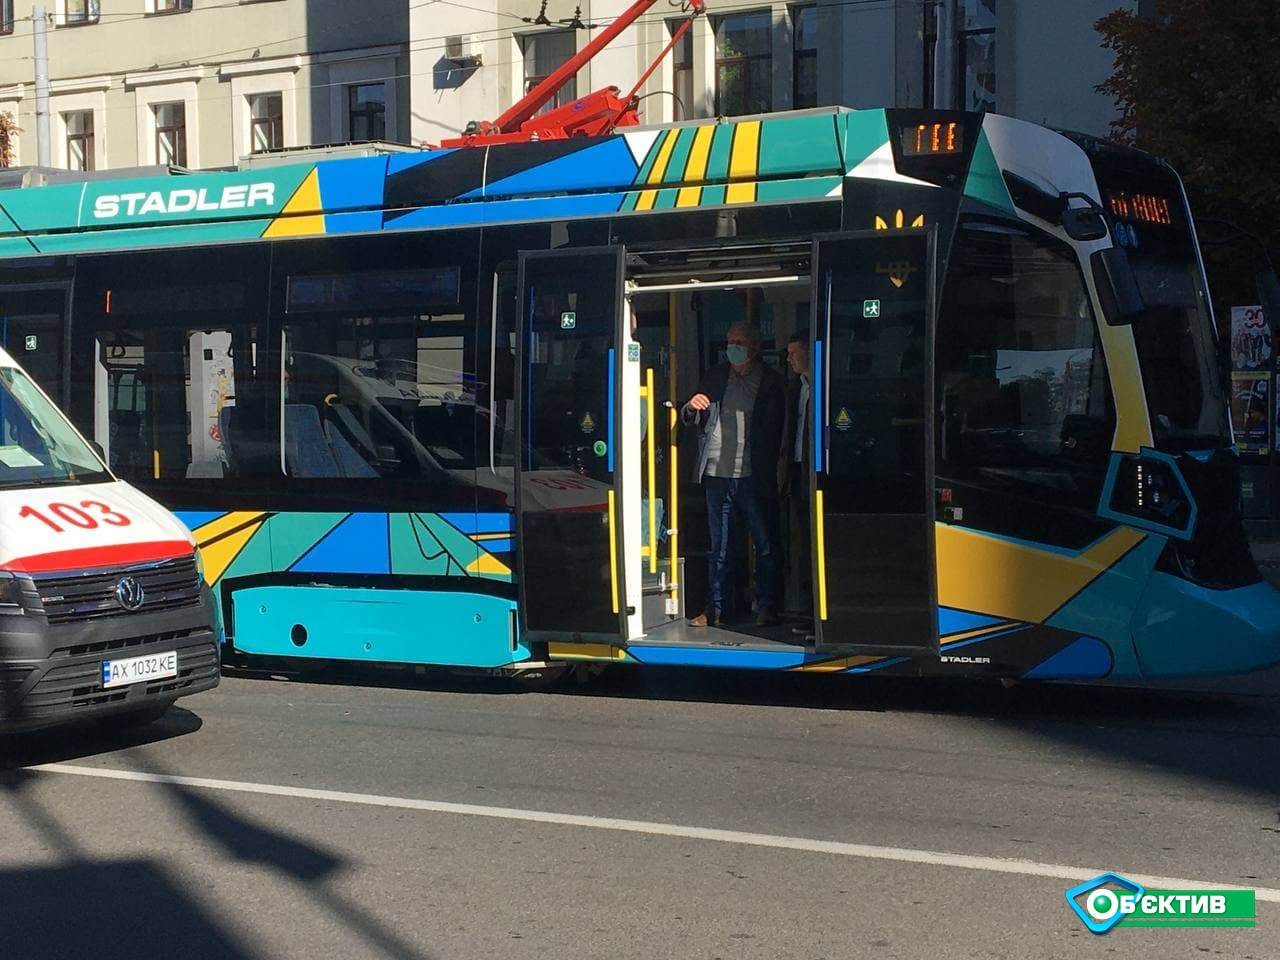 Новый трамвай швейцарской фирмы "Stadler" презентовали в Харькове 